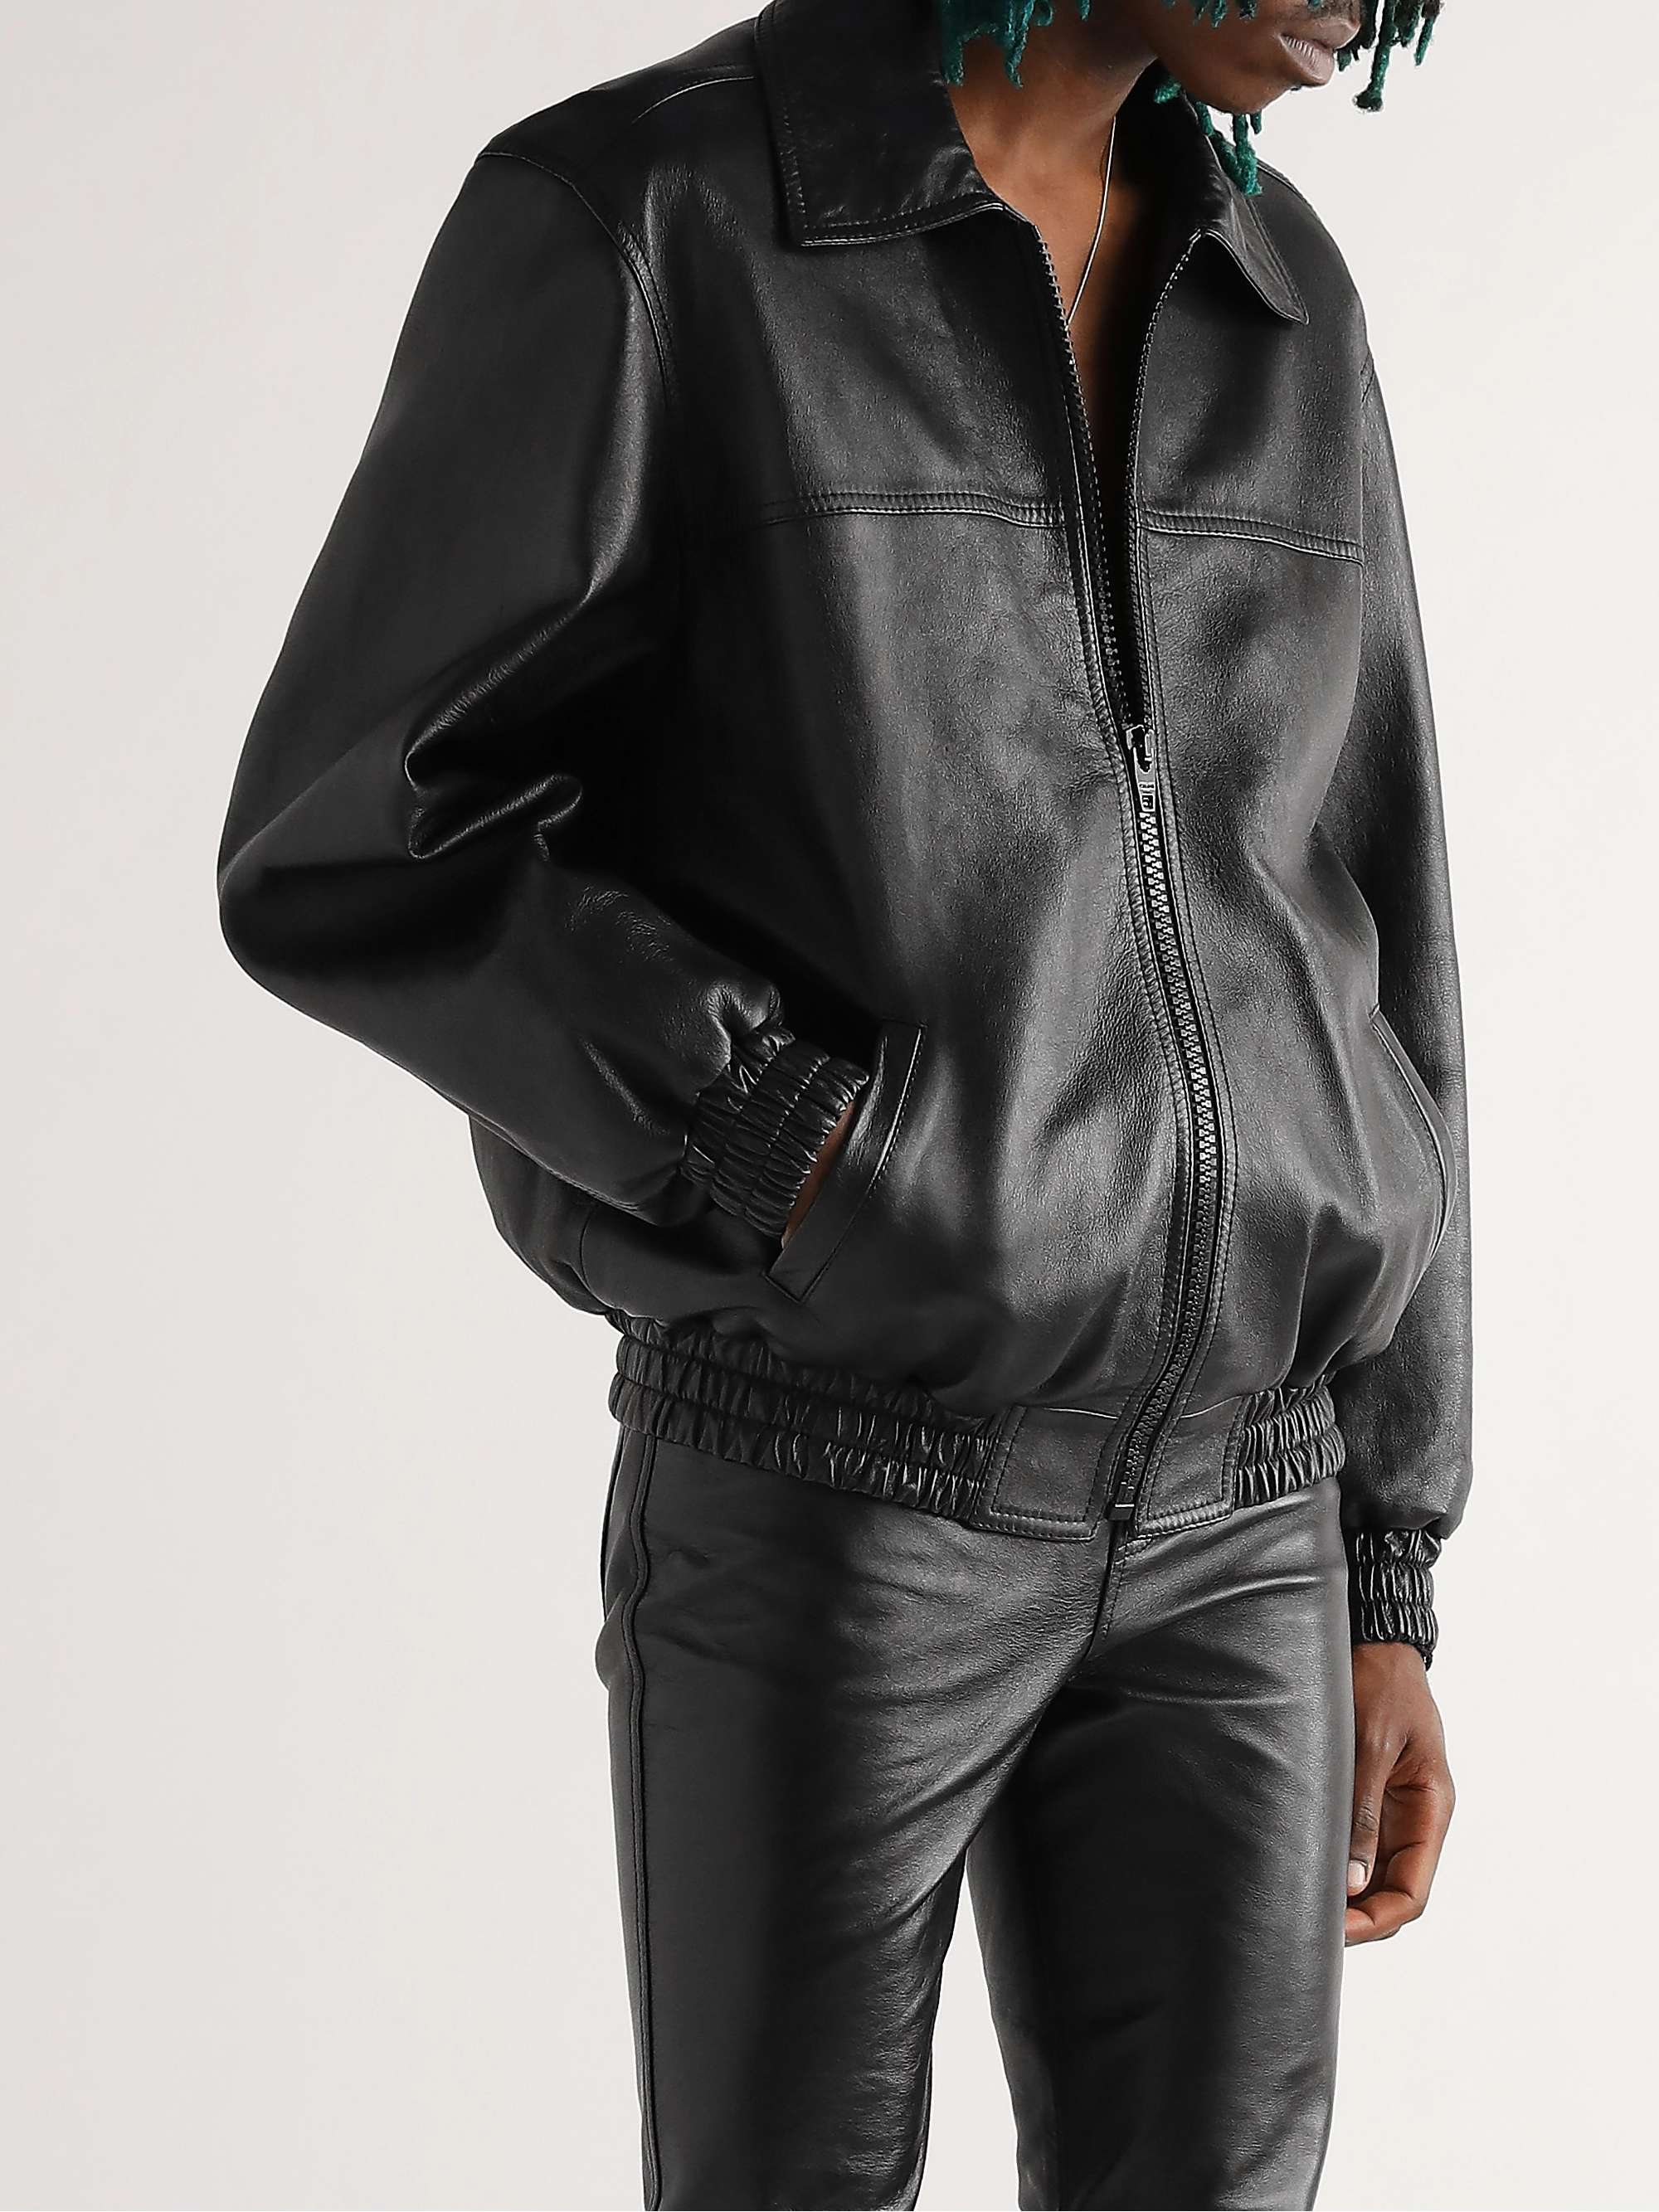 CELINE HOMME Fringed Logo-Embellished Leather Blouson Jacket | MR PORTER